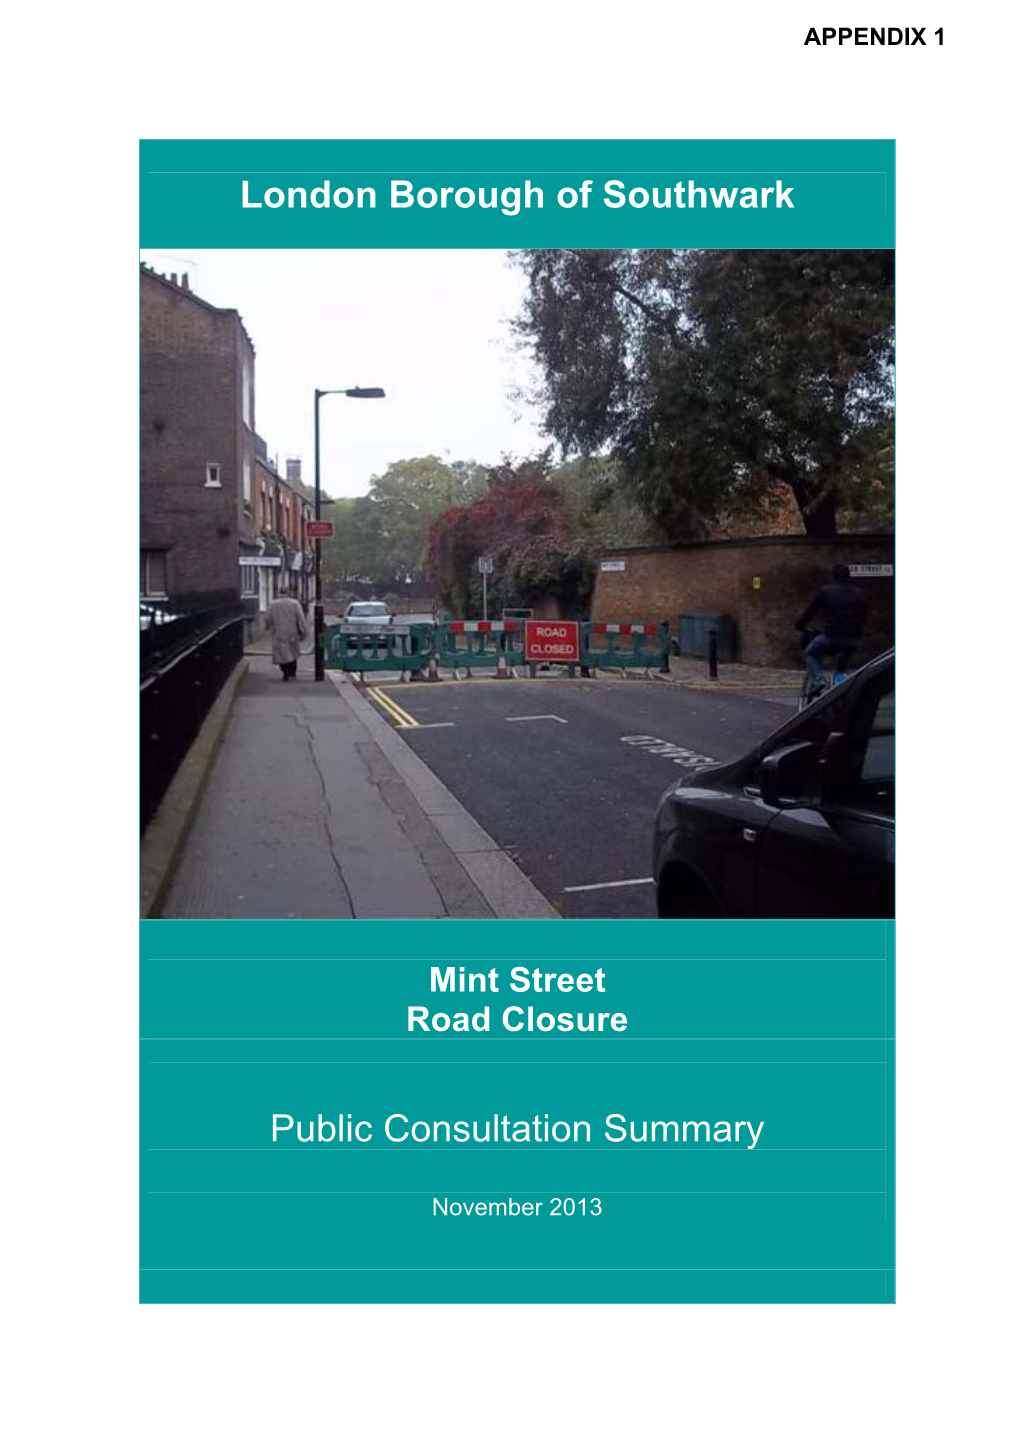 London Borough of Southwark Public Consultation Summary